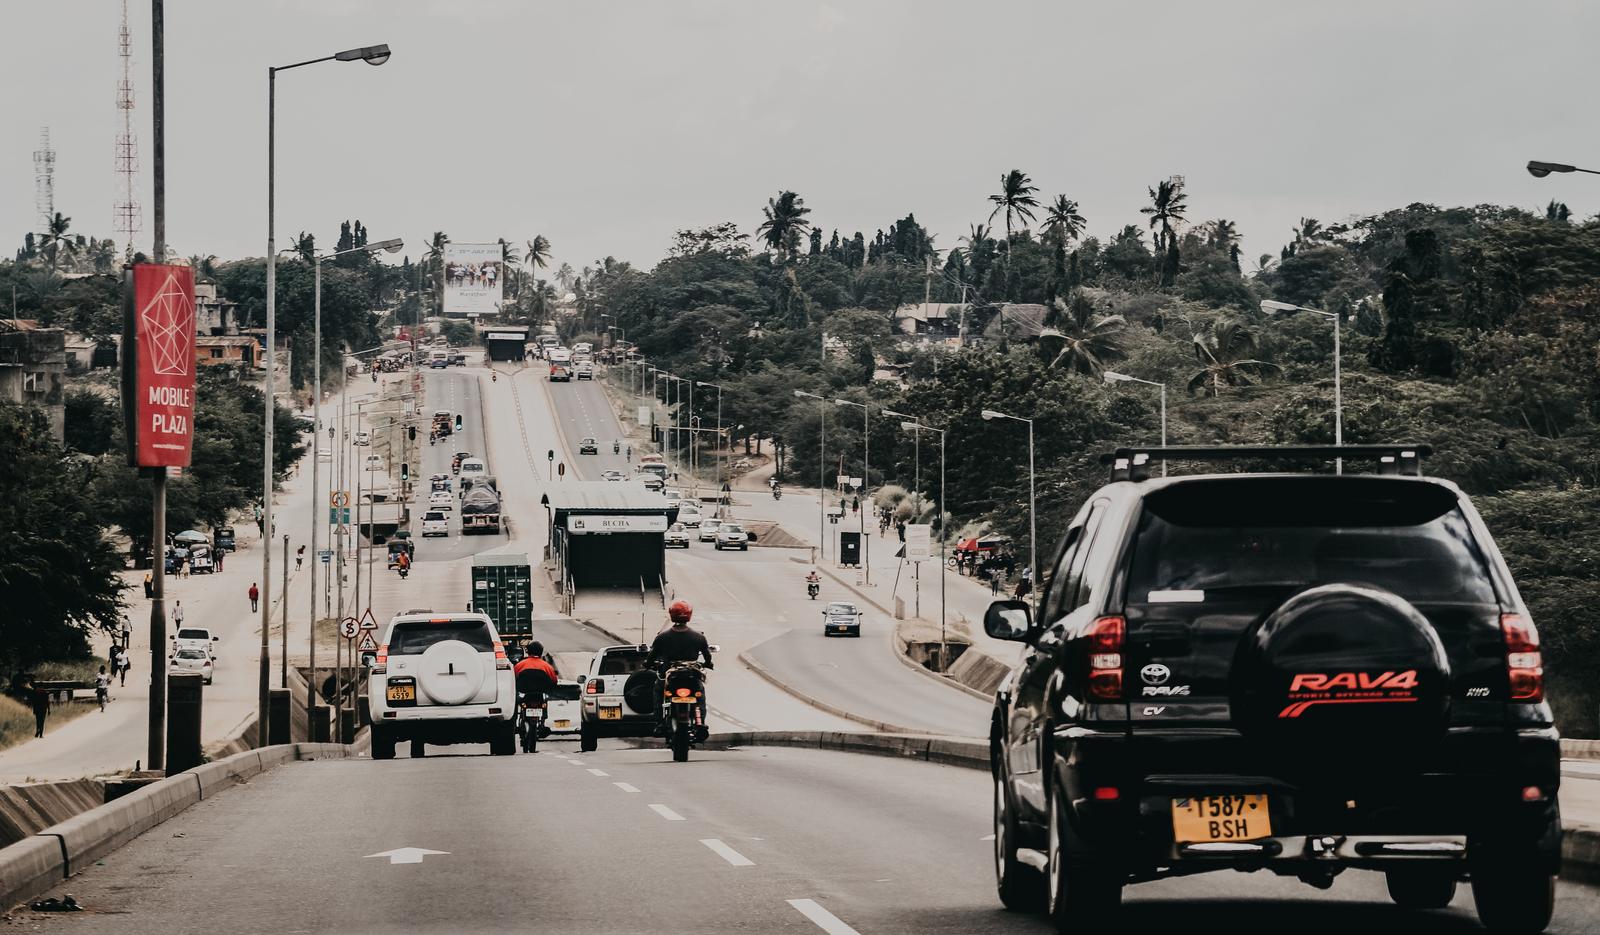 Cars in Kimara, Dar es Salaam.Photo by Omar on Unsplash